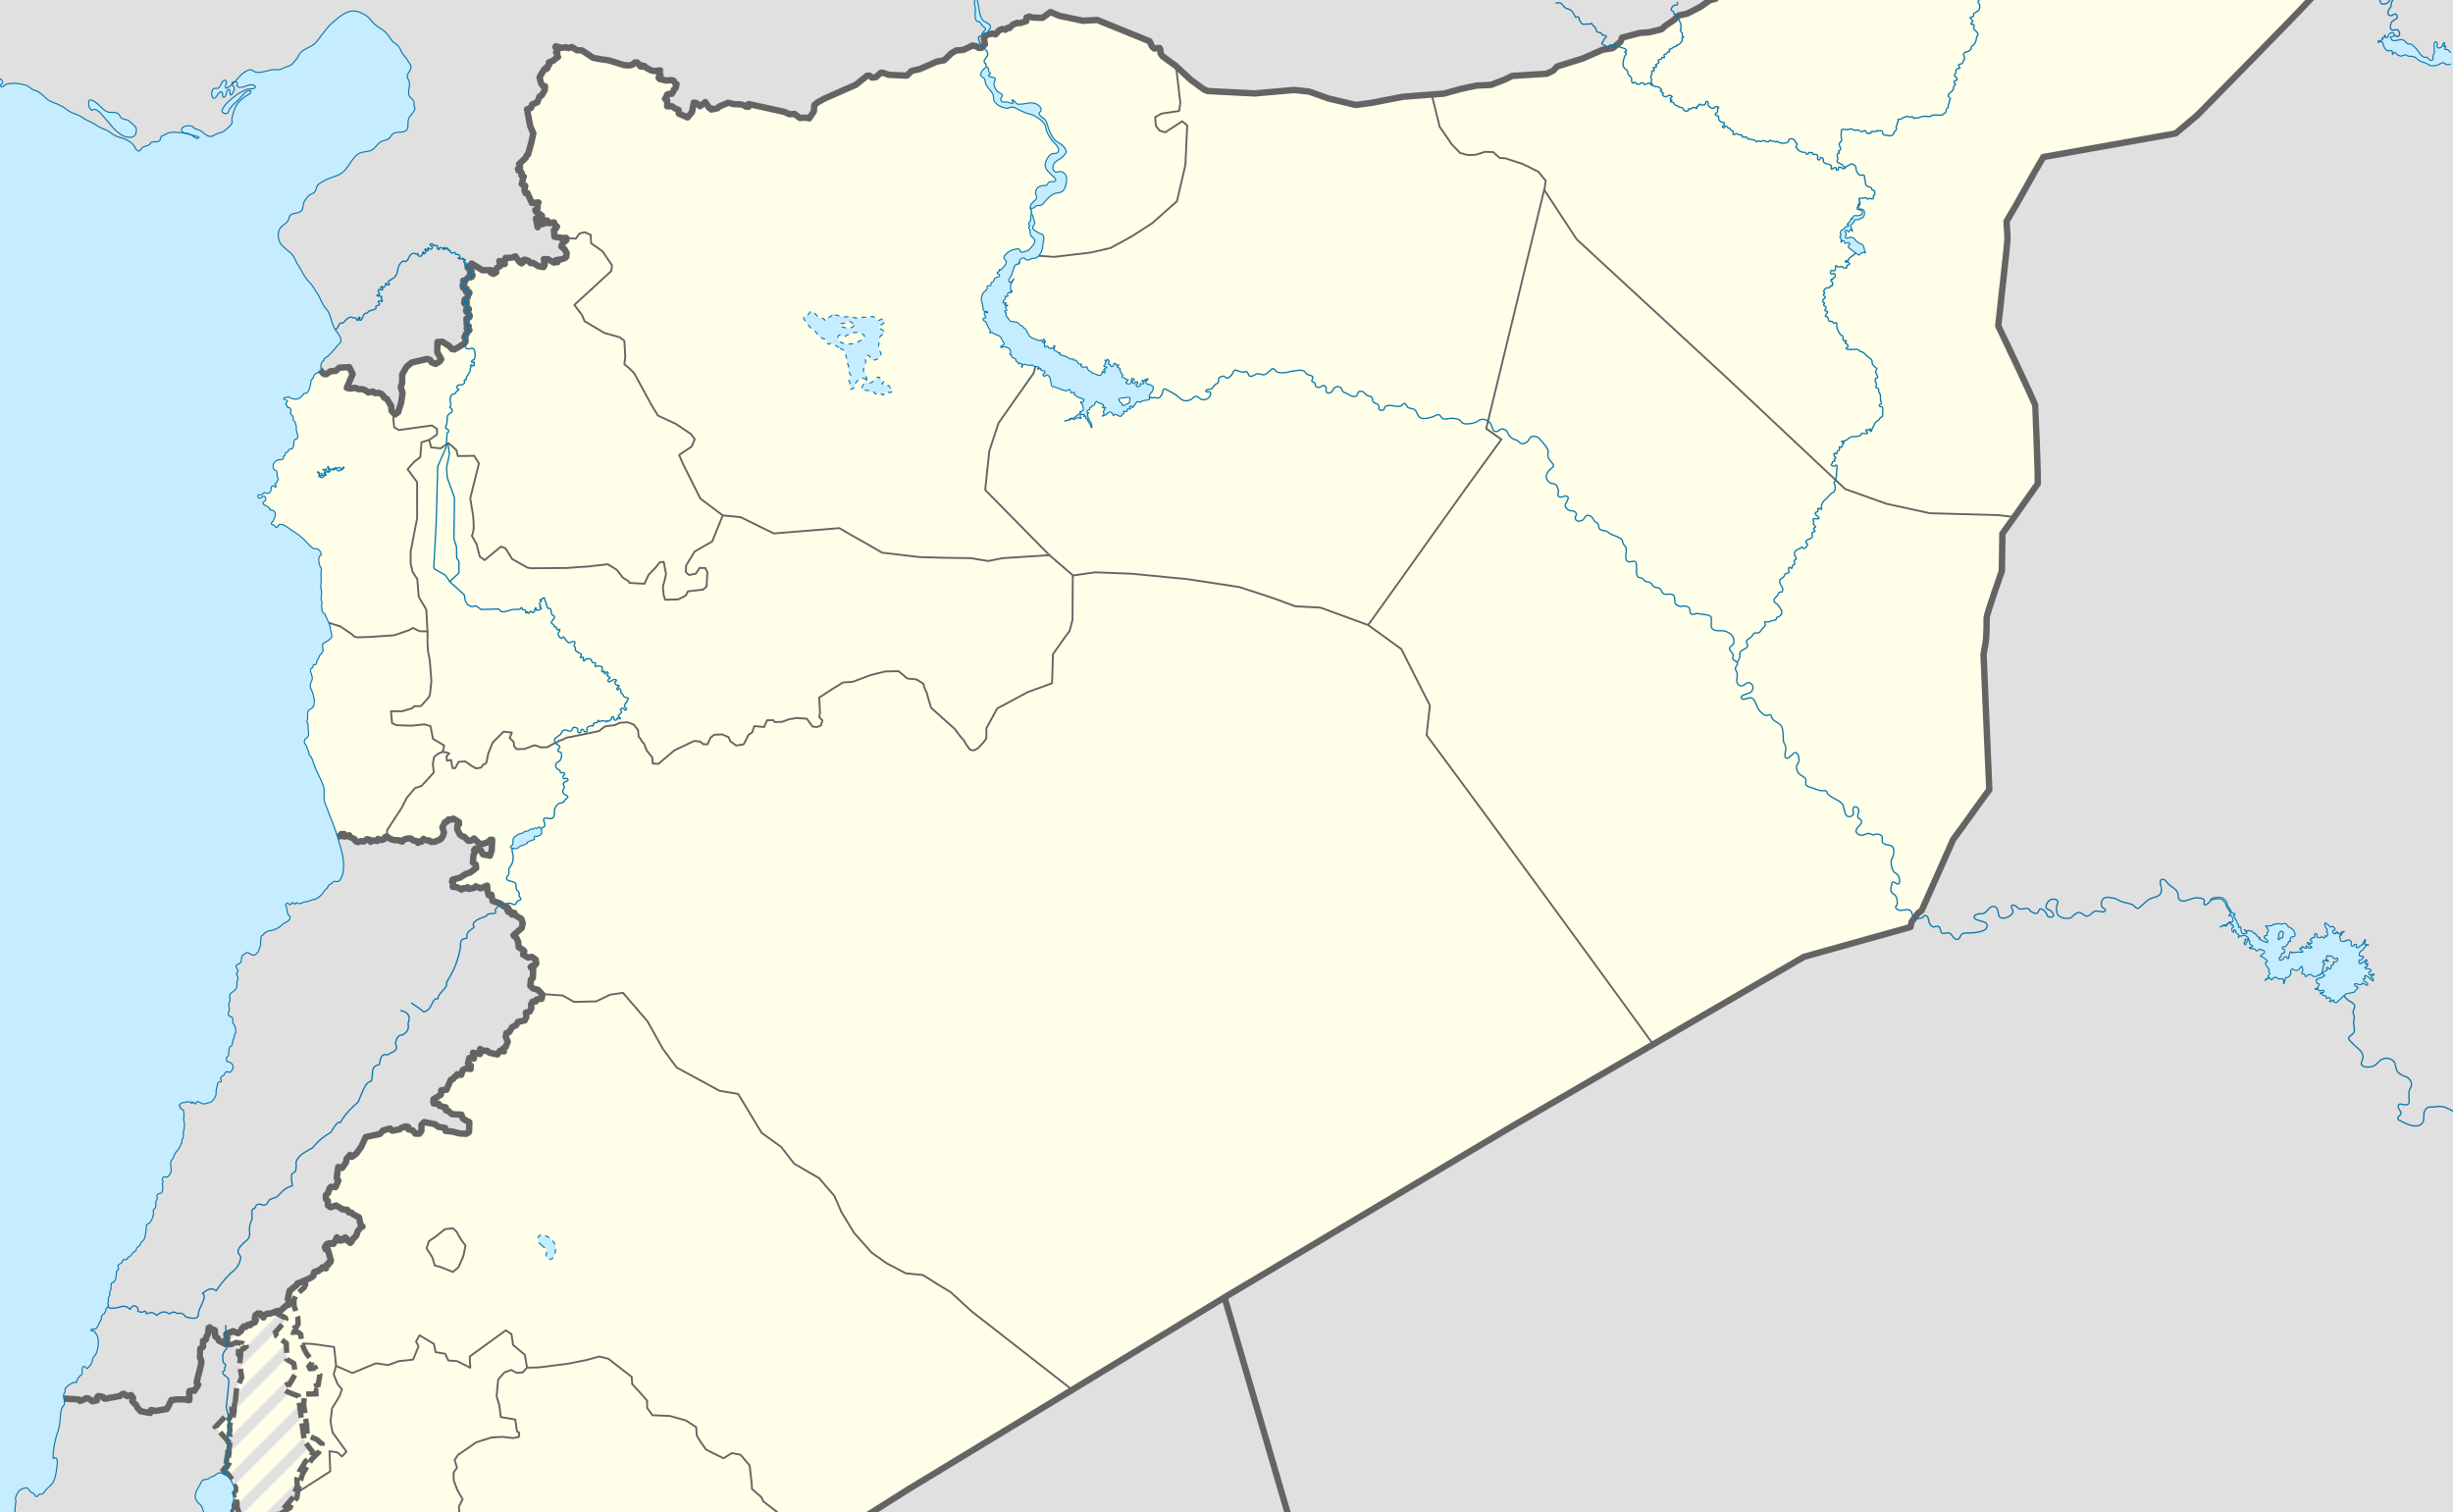 بالخرائط .. سايكس بيكو لم تقسم  سورية ، بل ضمت اليها ضعف مساحتها .؟